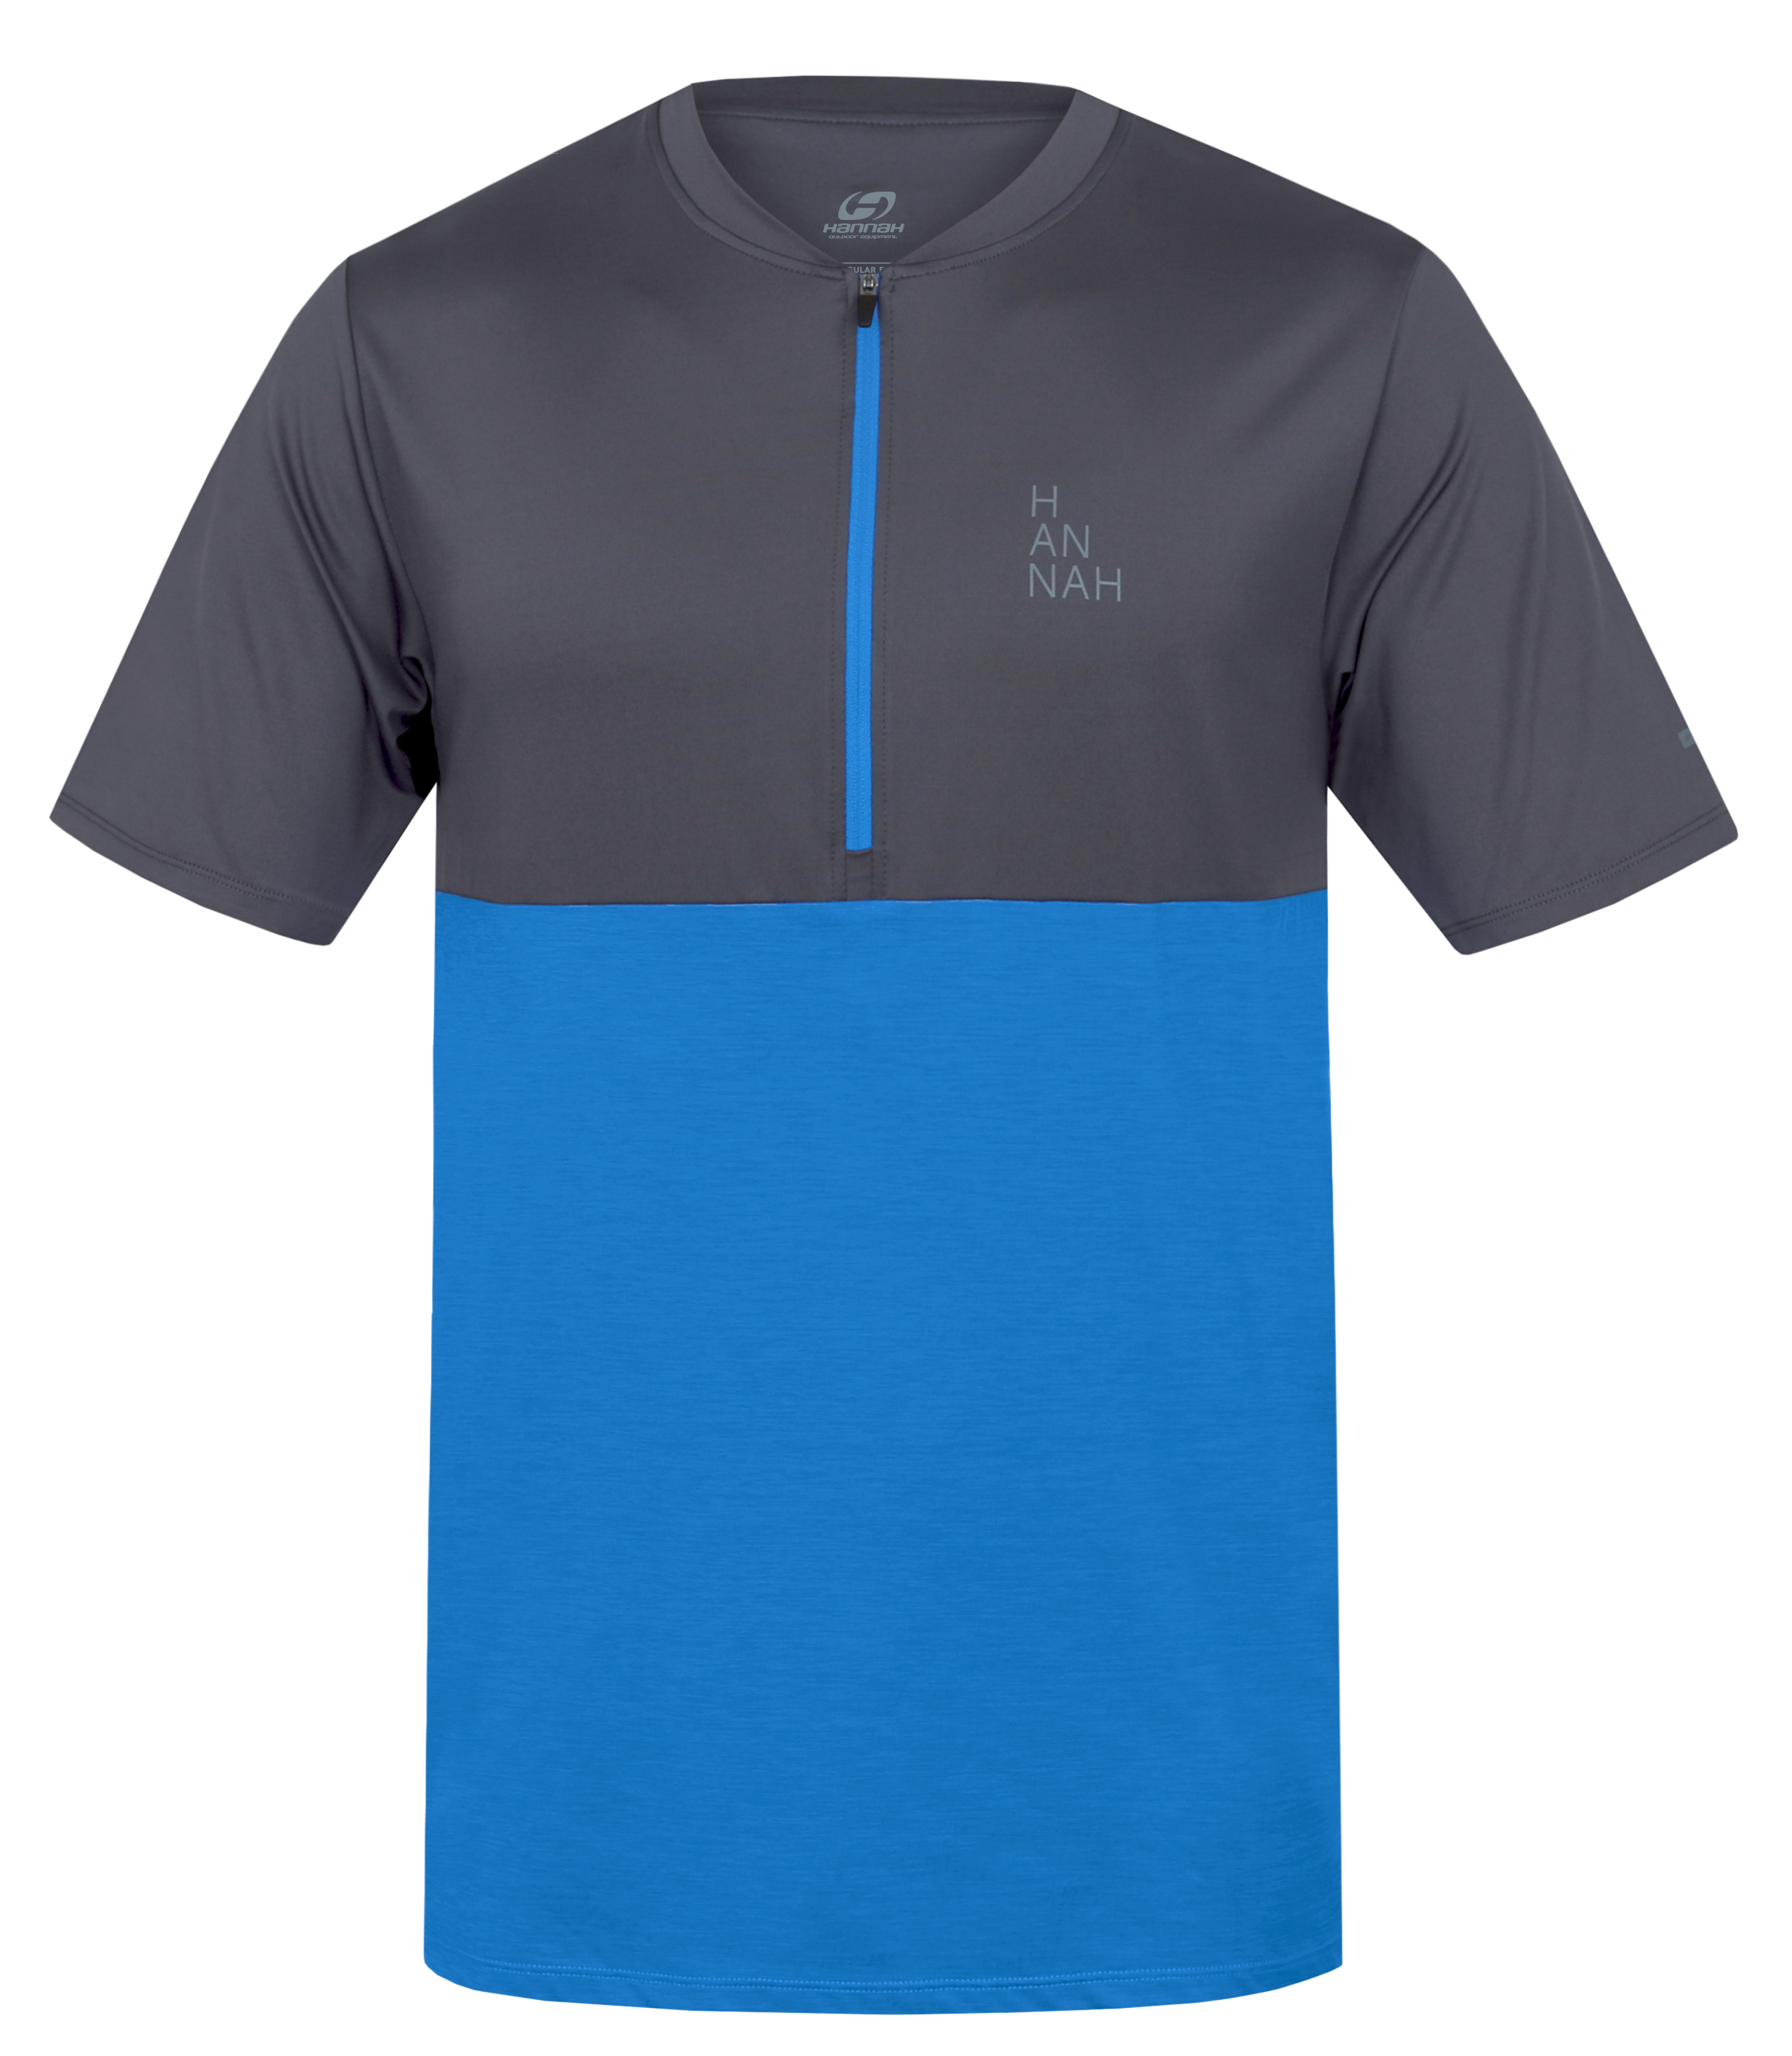 Hannah SANVI asphalt/french blue mel Velikost: S pánské tričko s krátkým rukávem